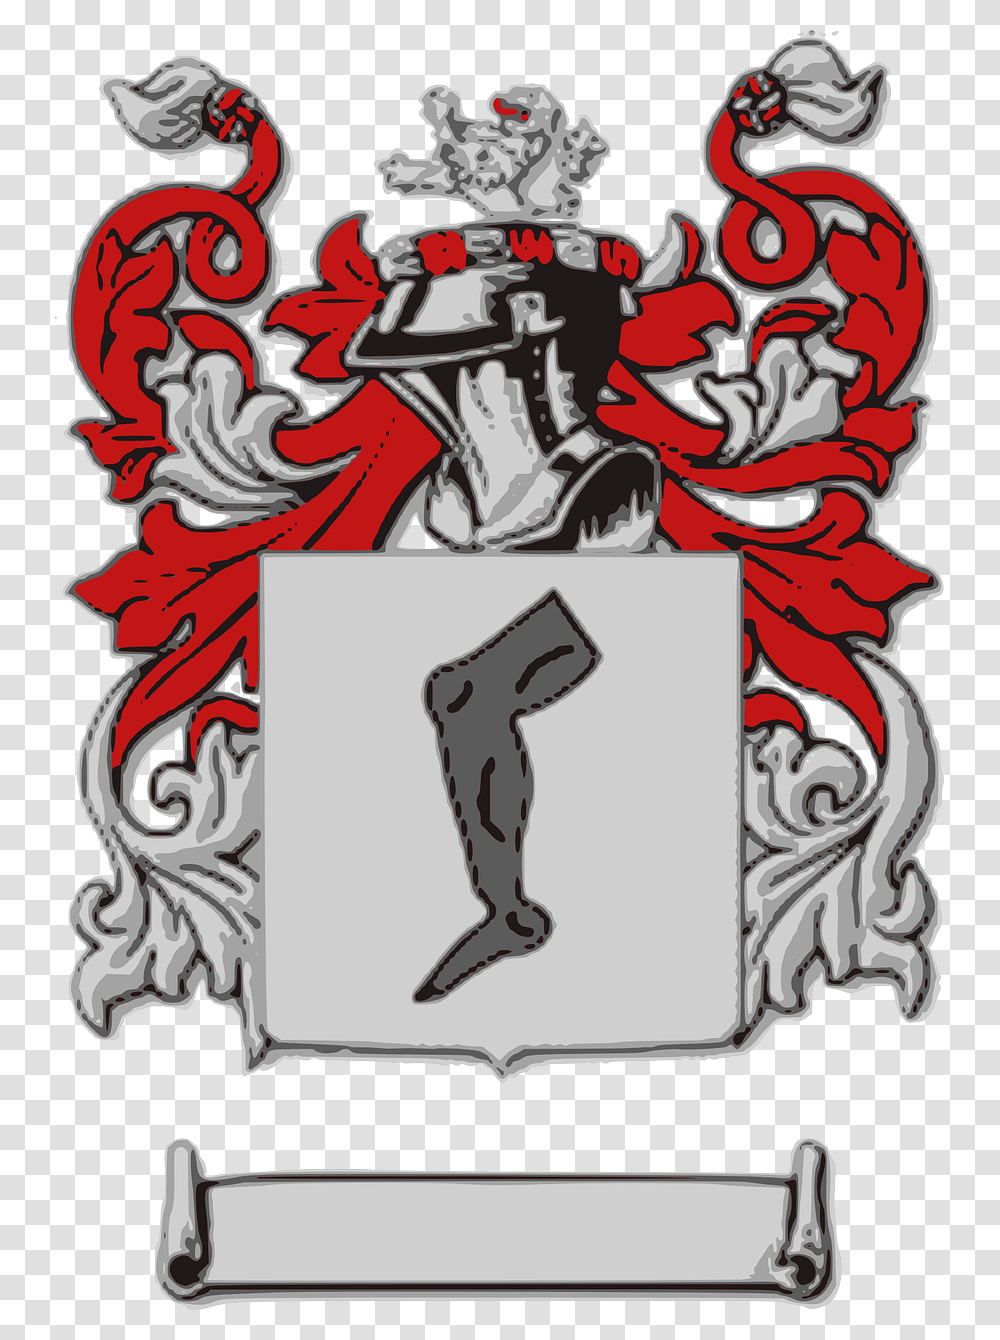 Meisner Coat Of Arms, Label Transparent Png